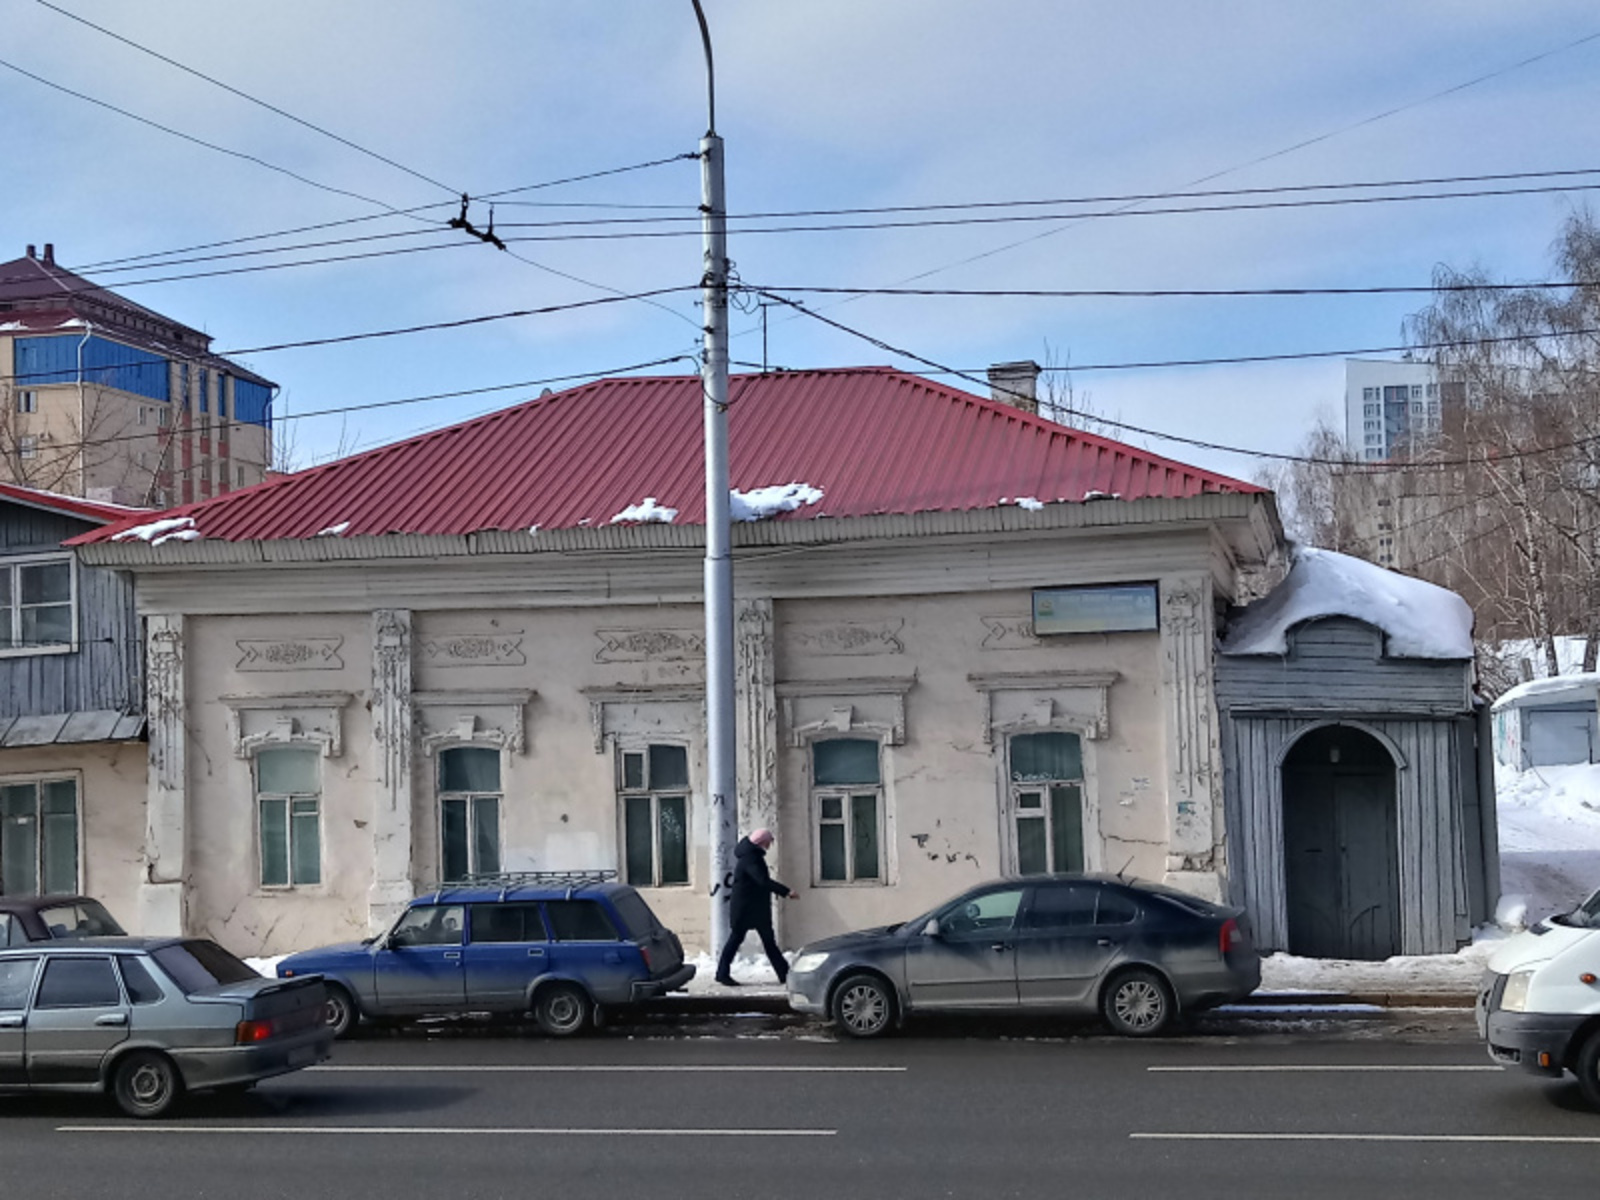 Парадный вид главного дома усадьбы Набатовых № 43. Фото предоставлено автором.